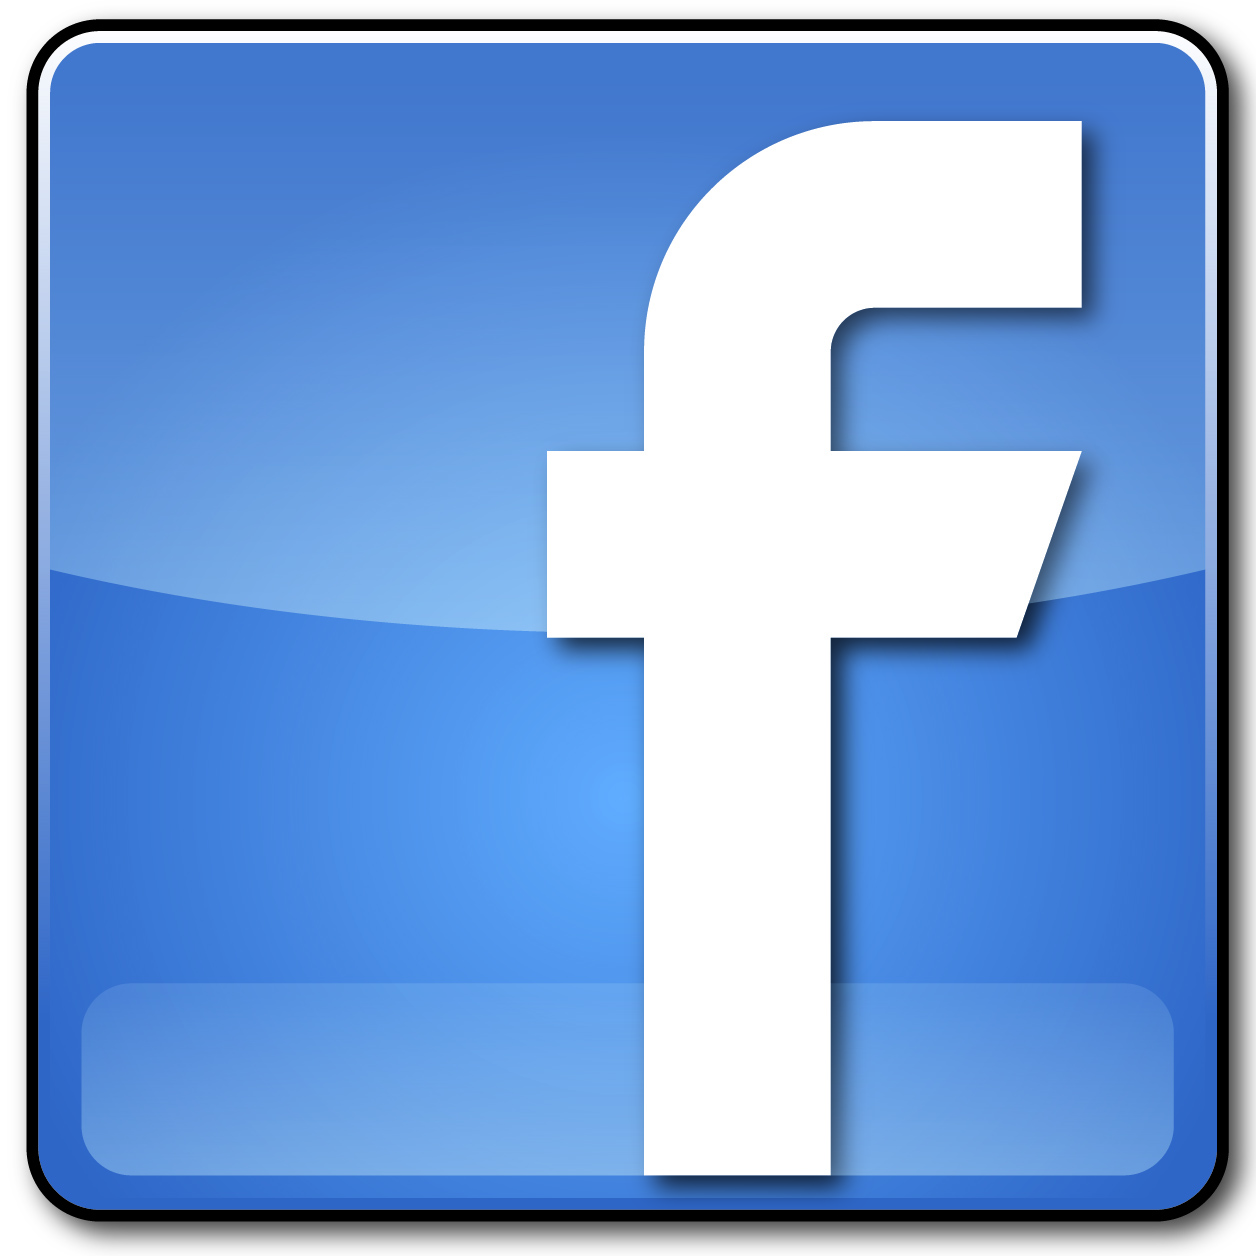 Facebook LOGO Transparent PNG Images, Free Logo Facebook.